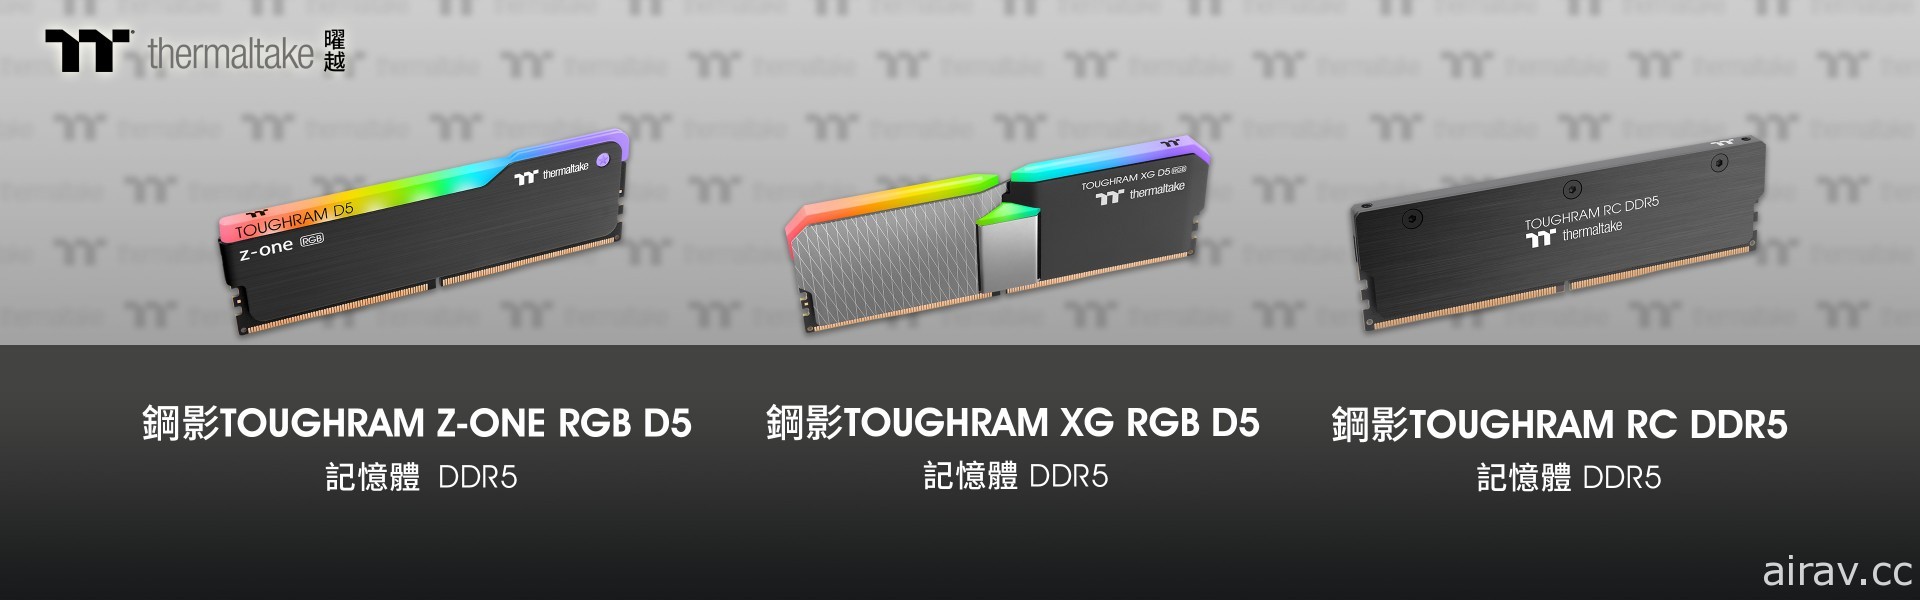 曜越推出全新 DDR5 内存系列